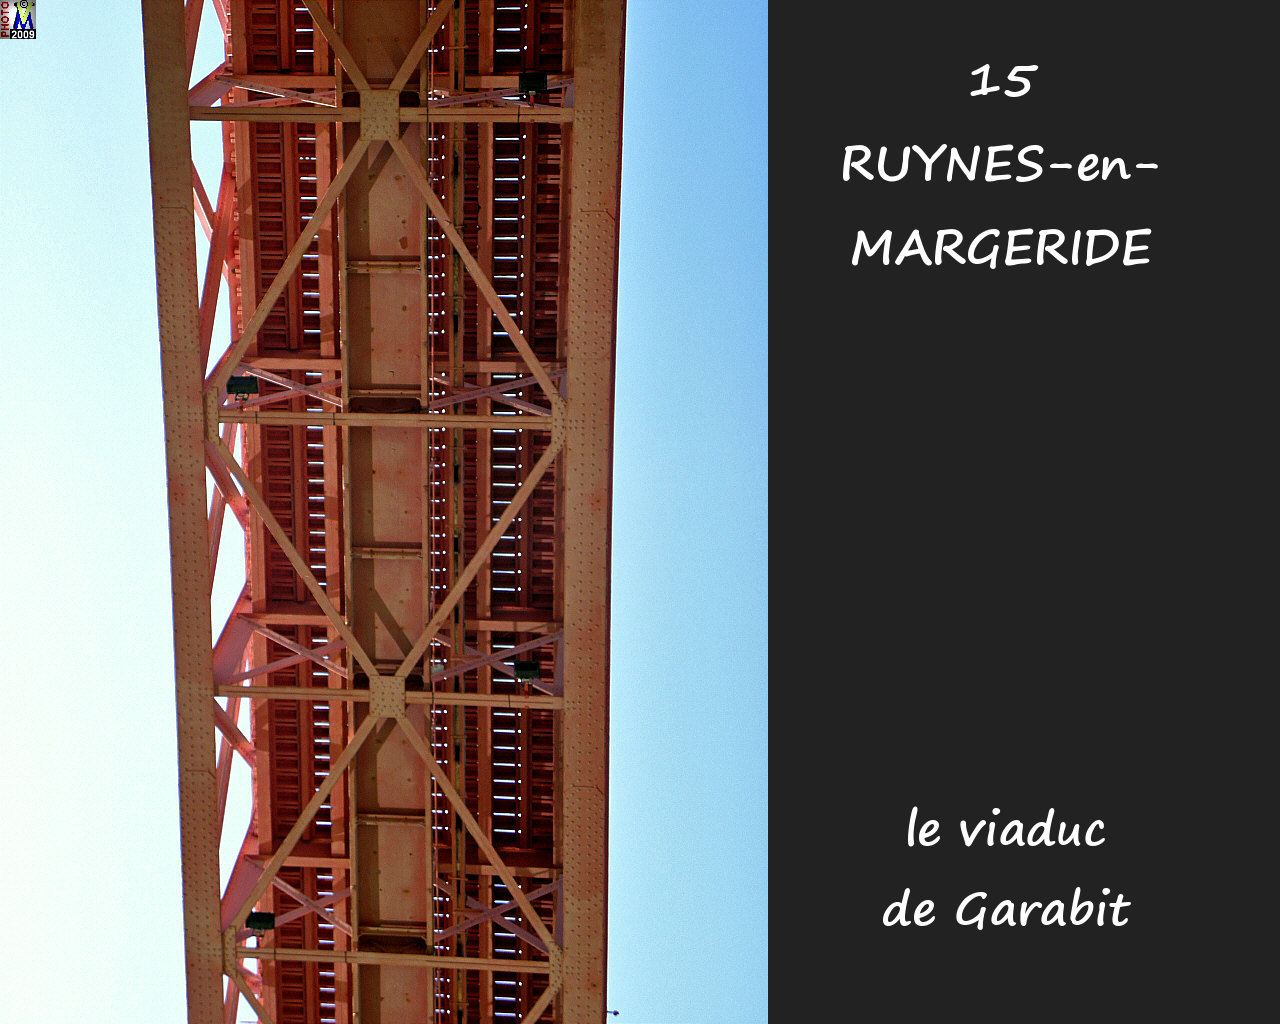 15RUYNES-MARGERIDE_viaduc_138.jpg